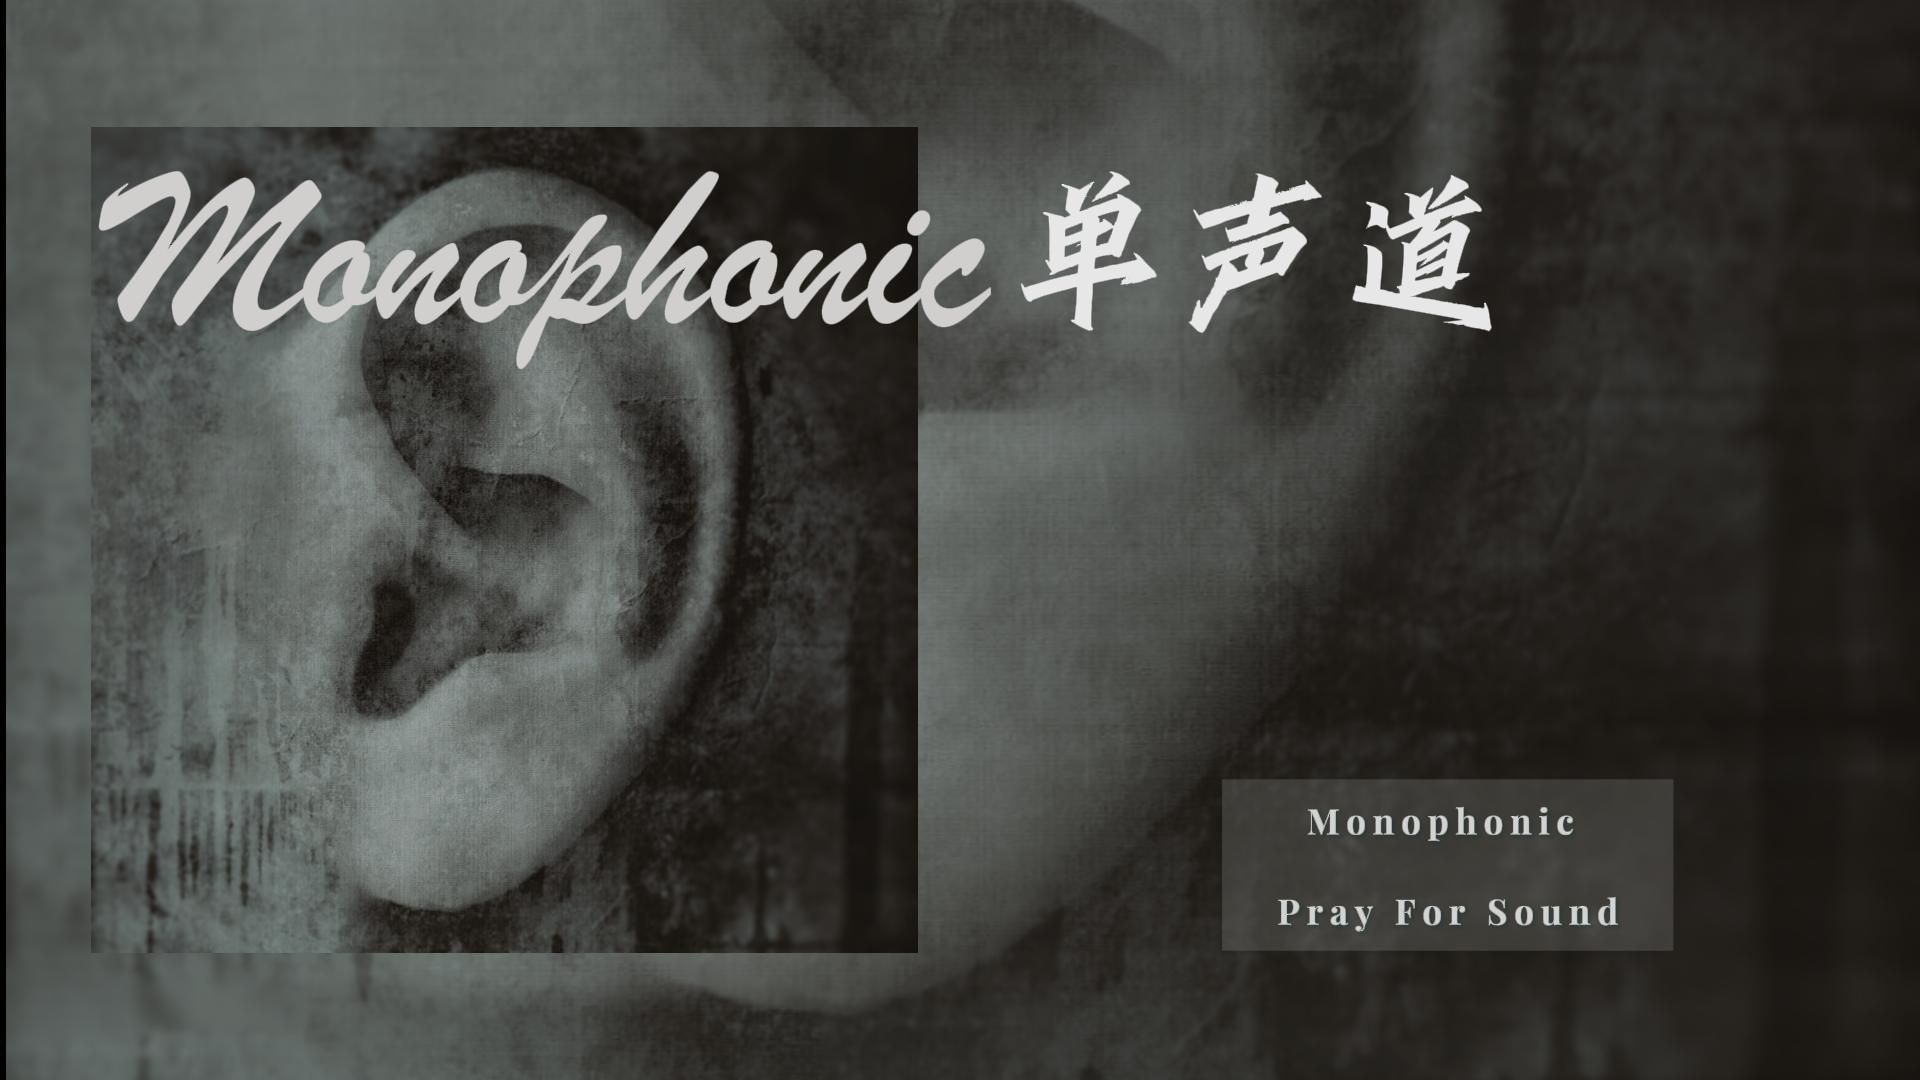 【后摇晚安Vol.128】Monophonic（单声道）/Pray For Sound/美国后摇